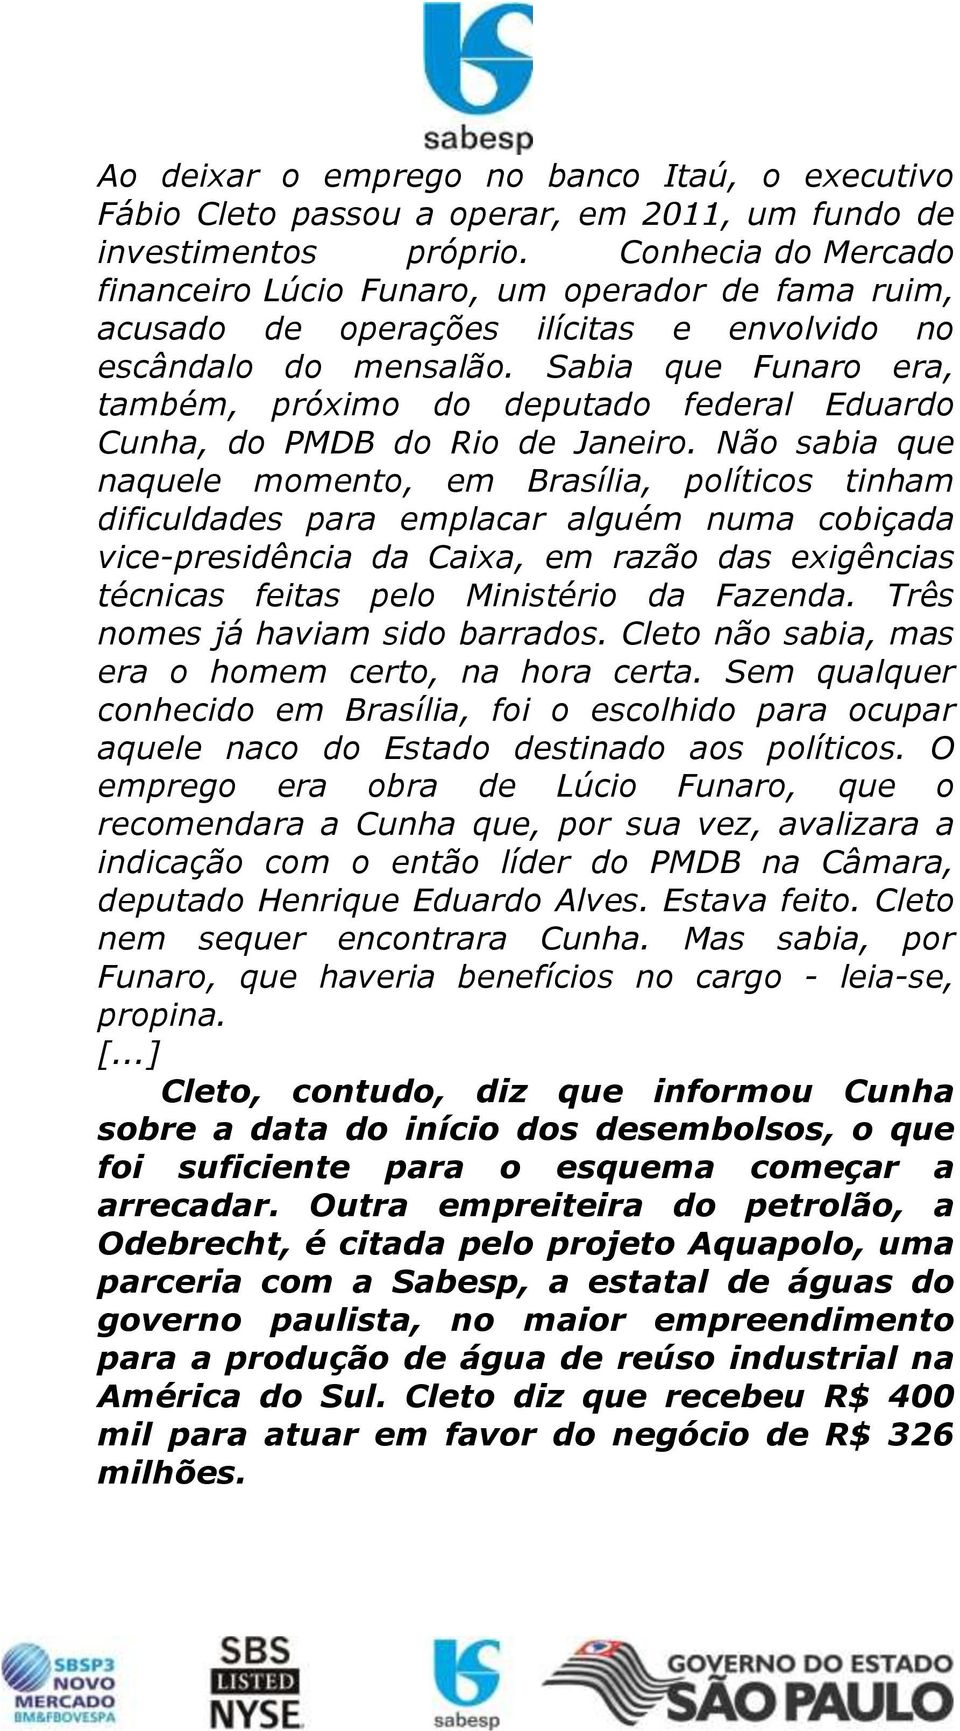 Sabia que Funaro era, também, próximo do deputado federal Eduardo Cunha, do PMDB do Rio de Janeiro.